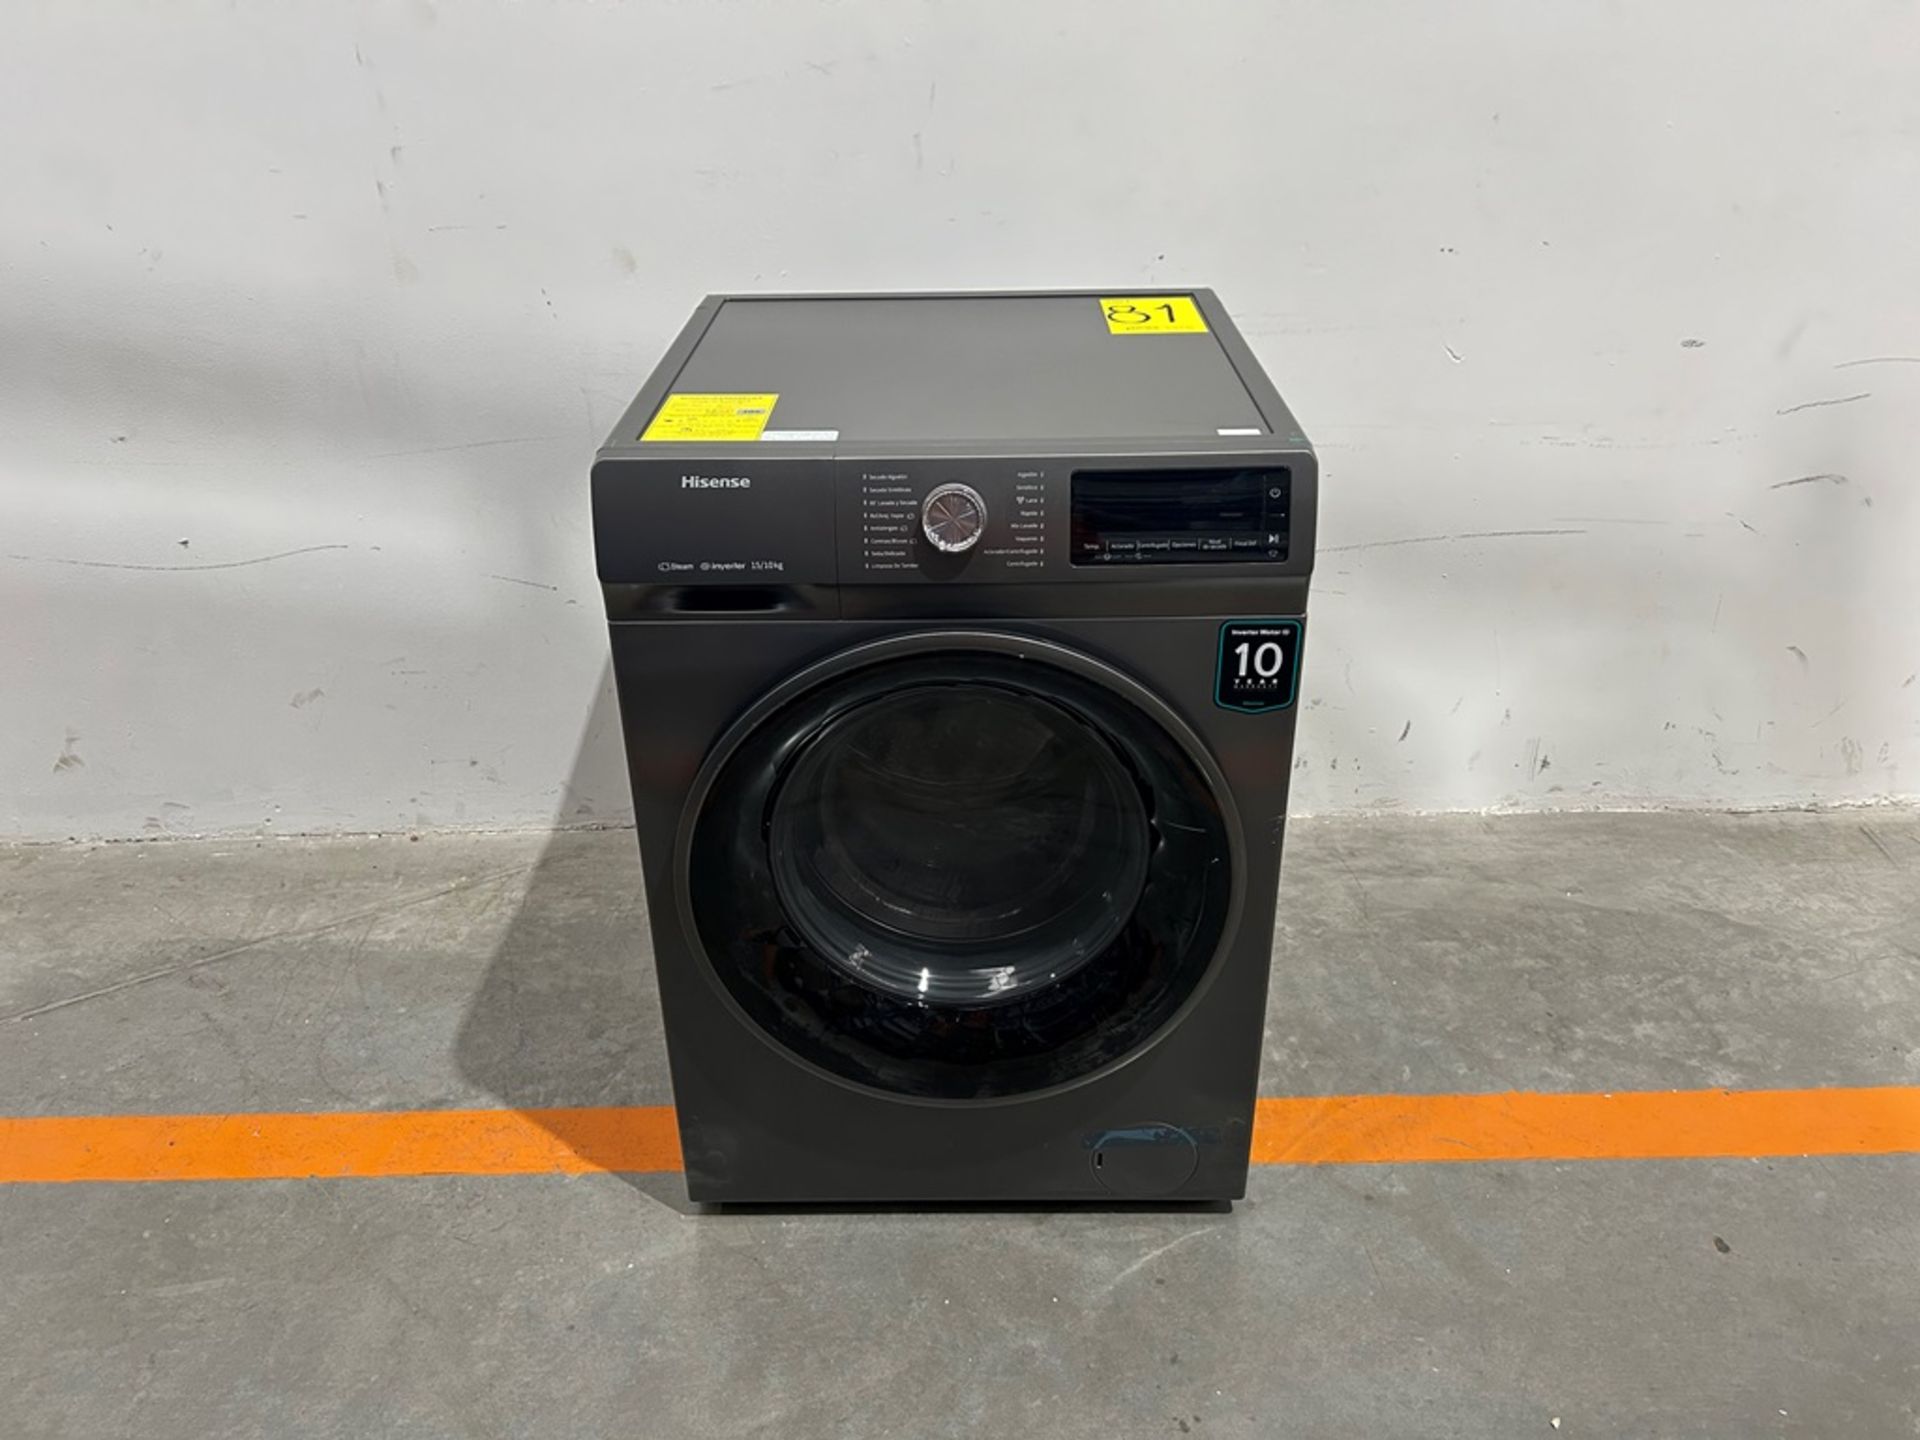 (NUEVO) Lavasecadora de 15/10 KG Marca HISENSE, Modelo WDQY1514, Serie 20036, Color GRIS